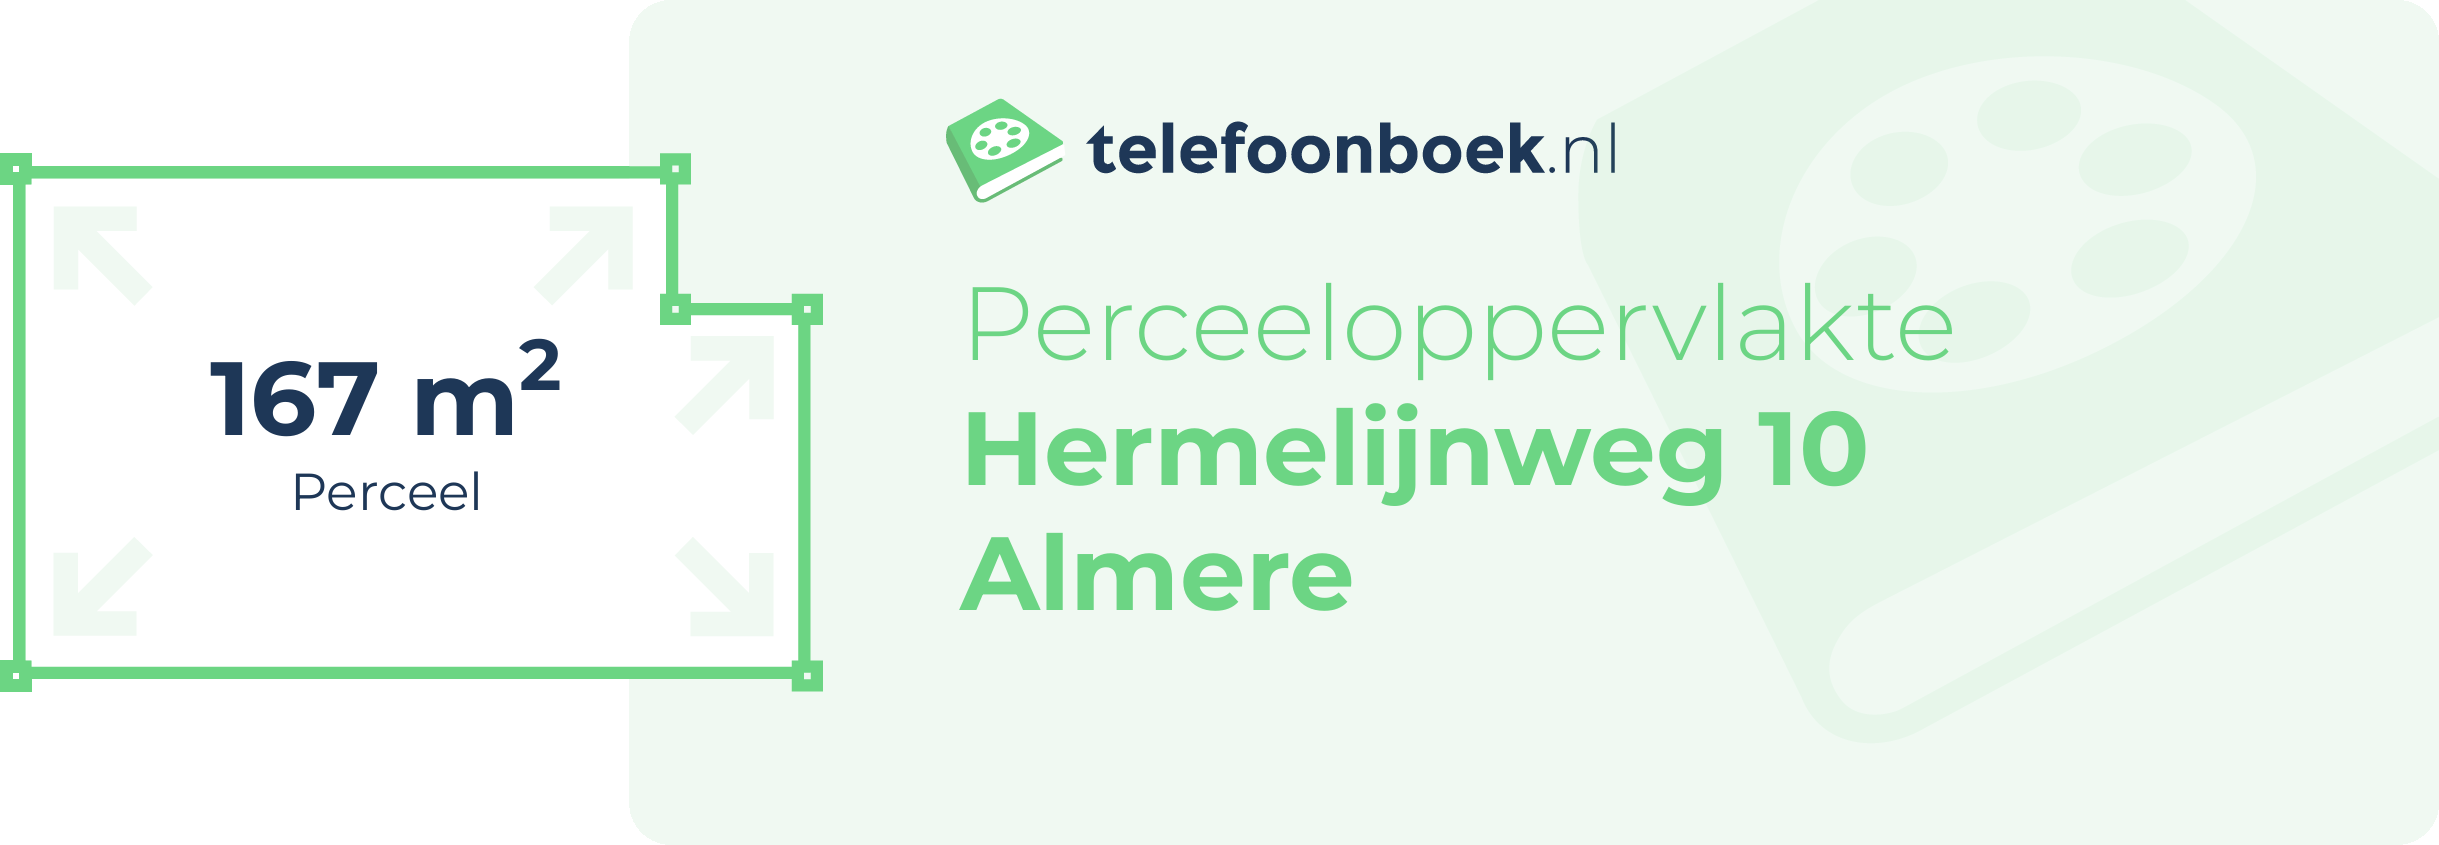 Perceeloppervlakte Hermelijnweg 10 Almere